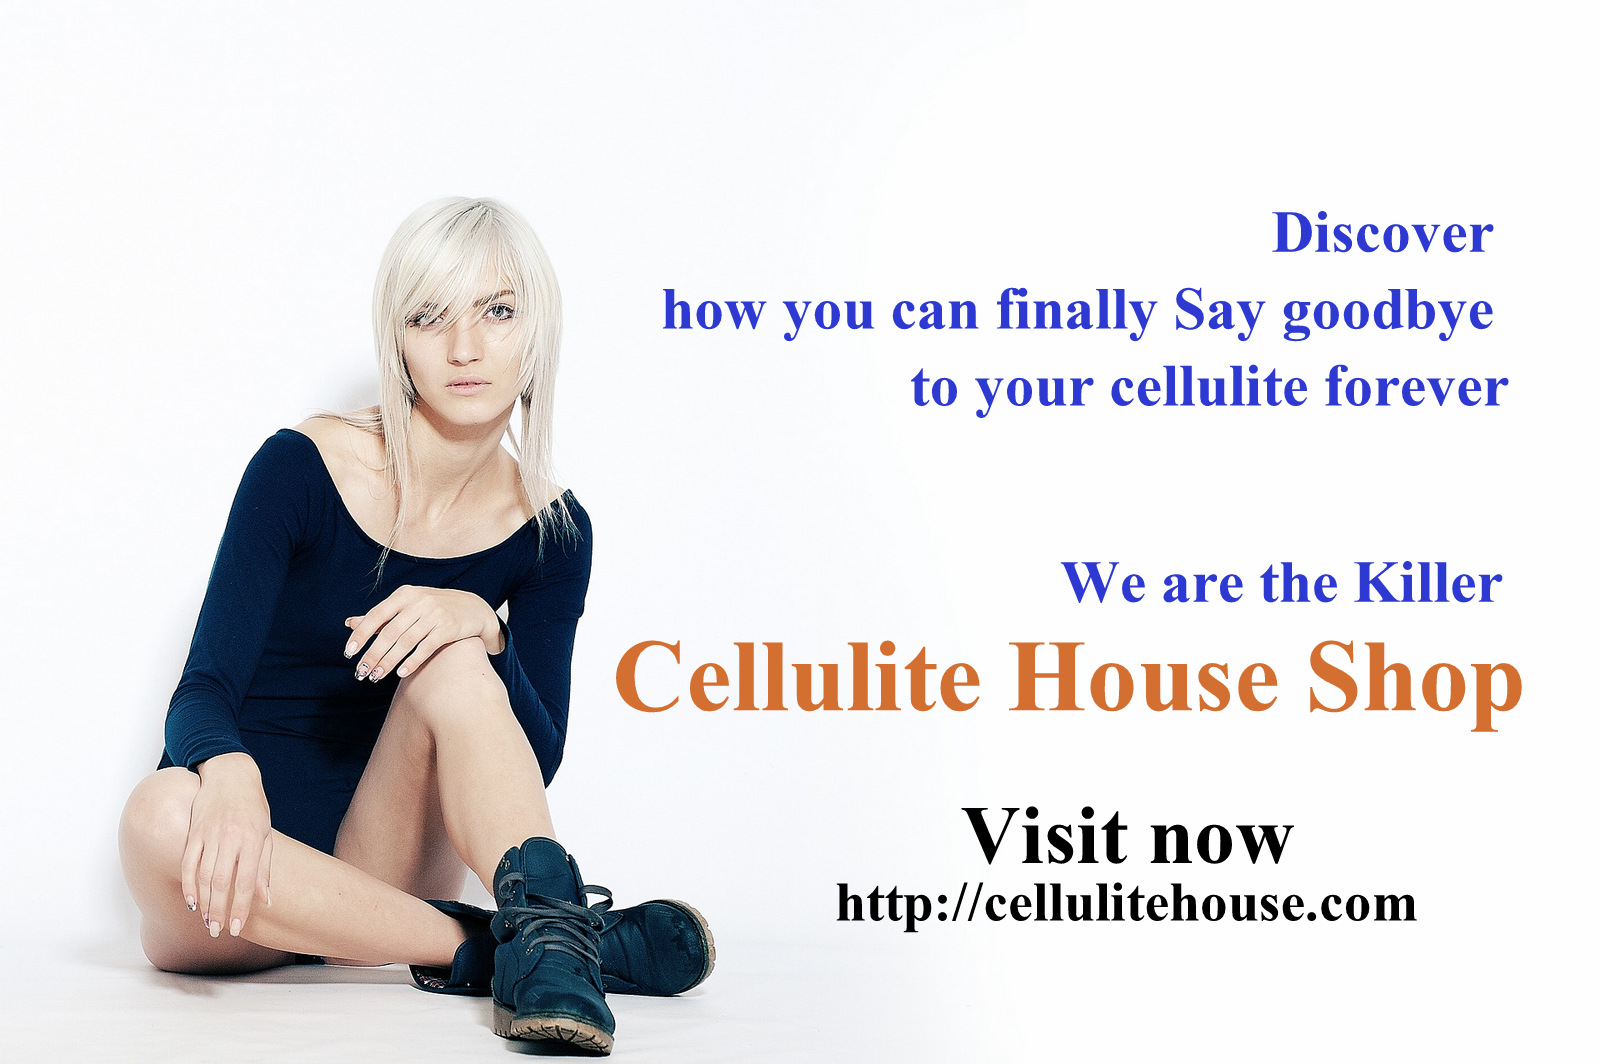 Cellulite House Shop